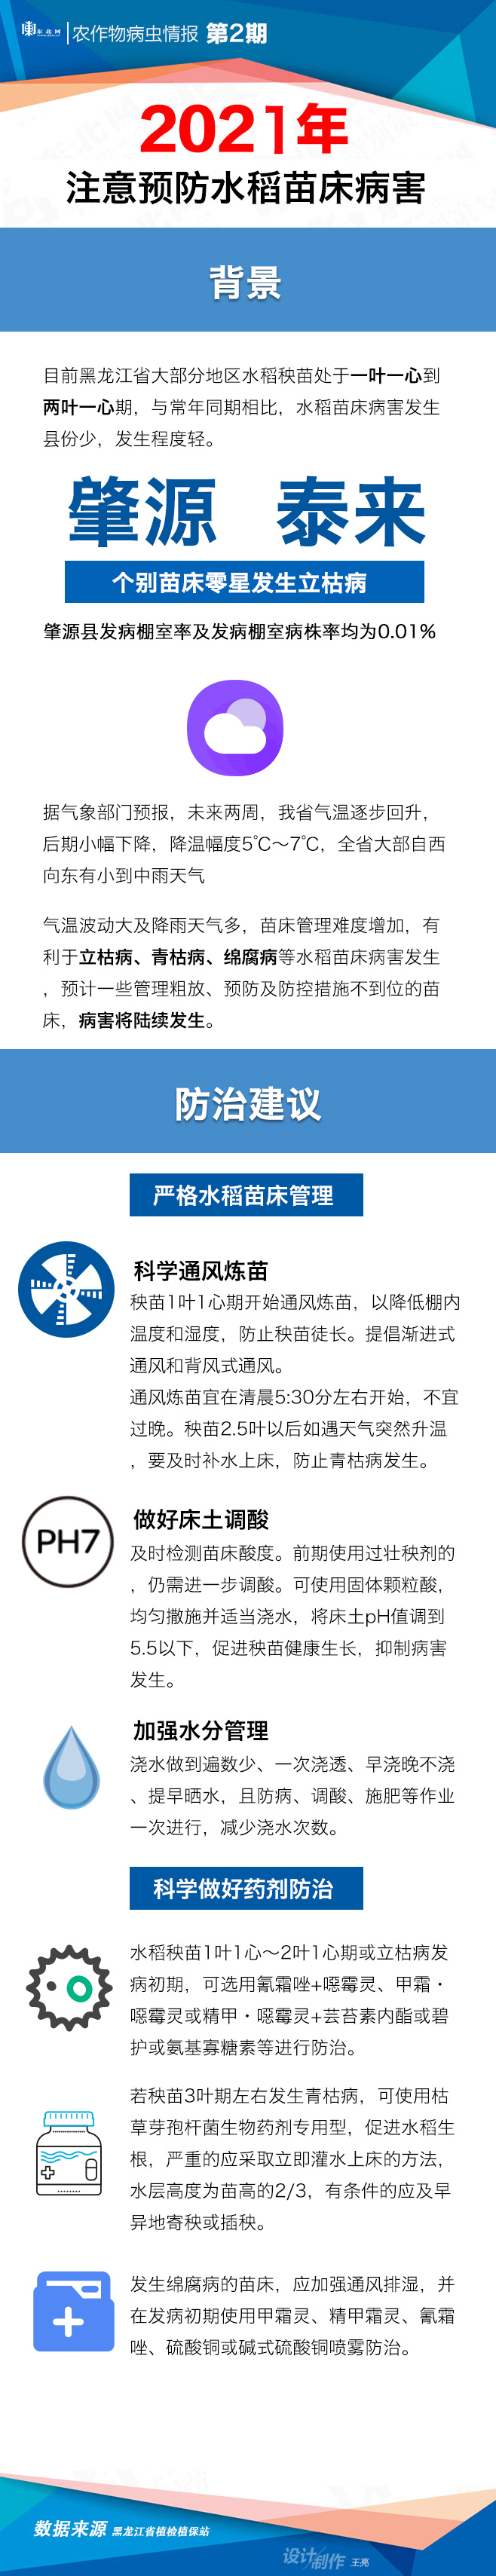 【一图看懂】与常年同期相比 黑龙江省水稻苗床病害发生县份少